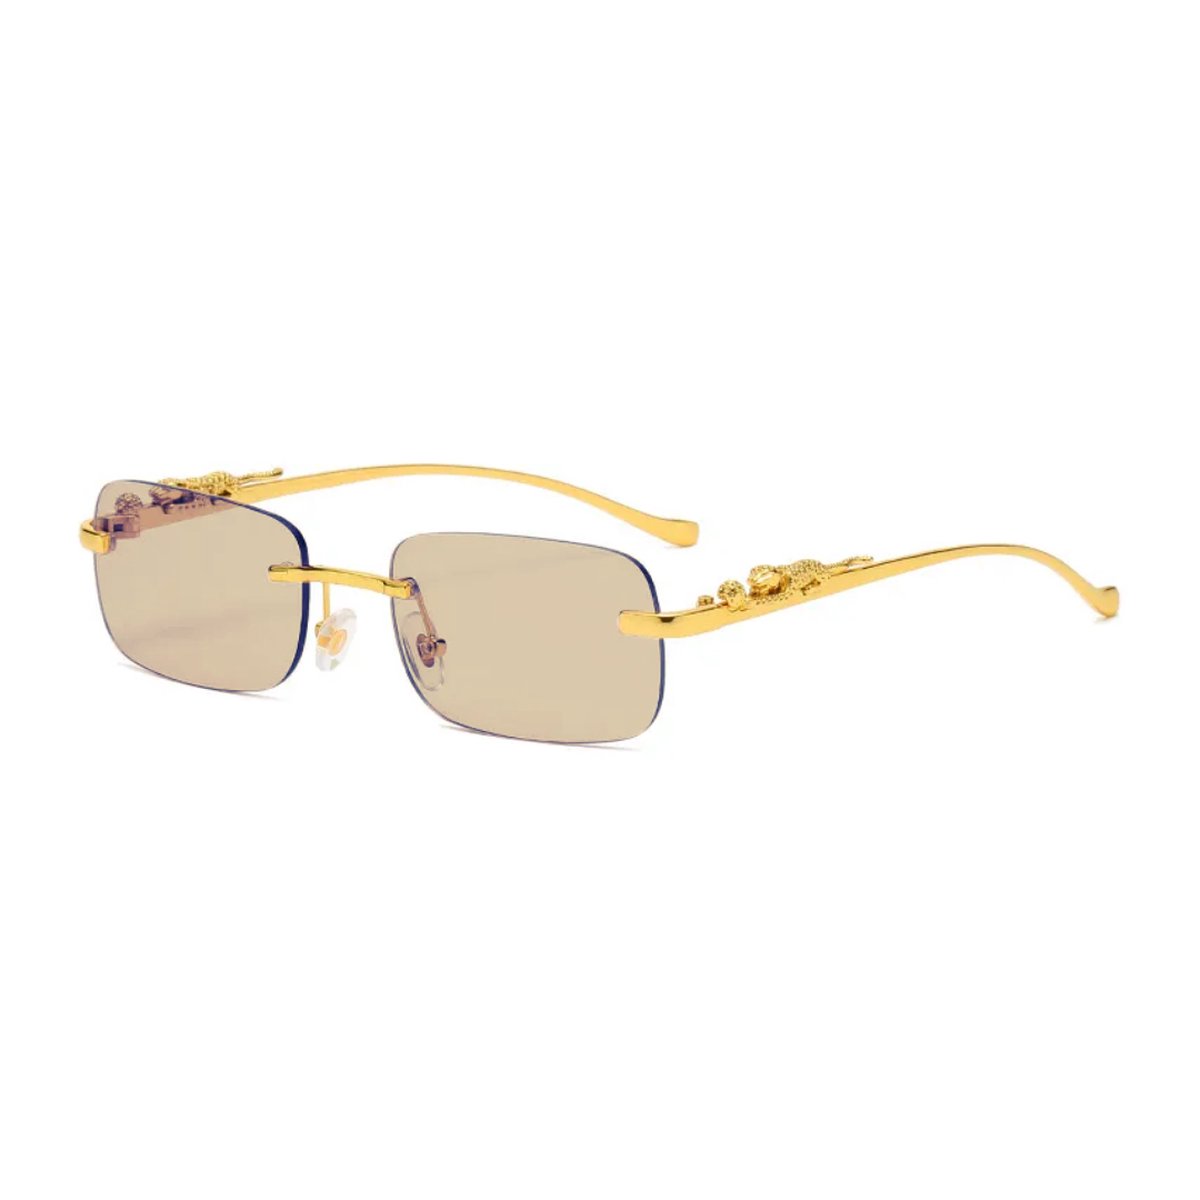 Gouden luipaard bril - tea - randloos/zonnebril/rechthoekig/Jacques-leopard / carnaval bril / accessoires / feest bril / gekke bril / verkleed bril